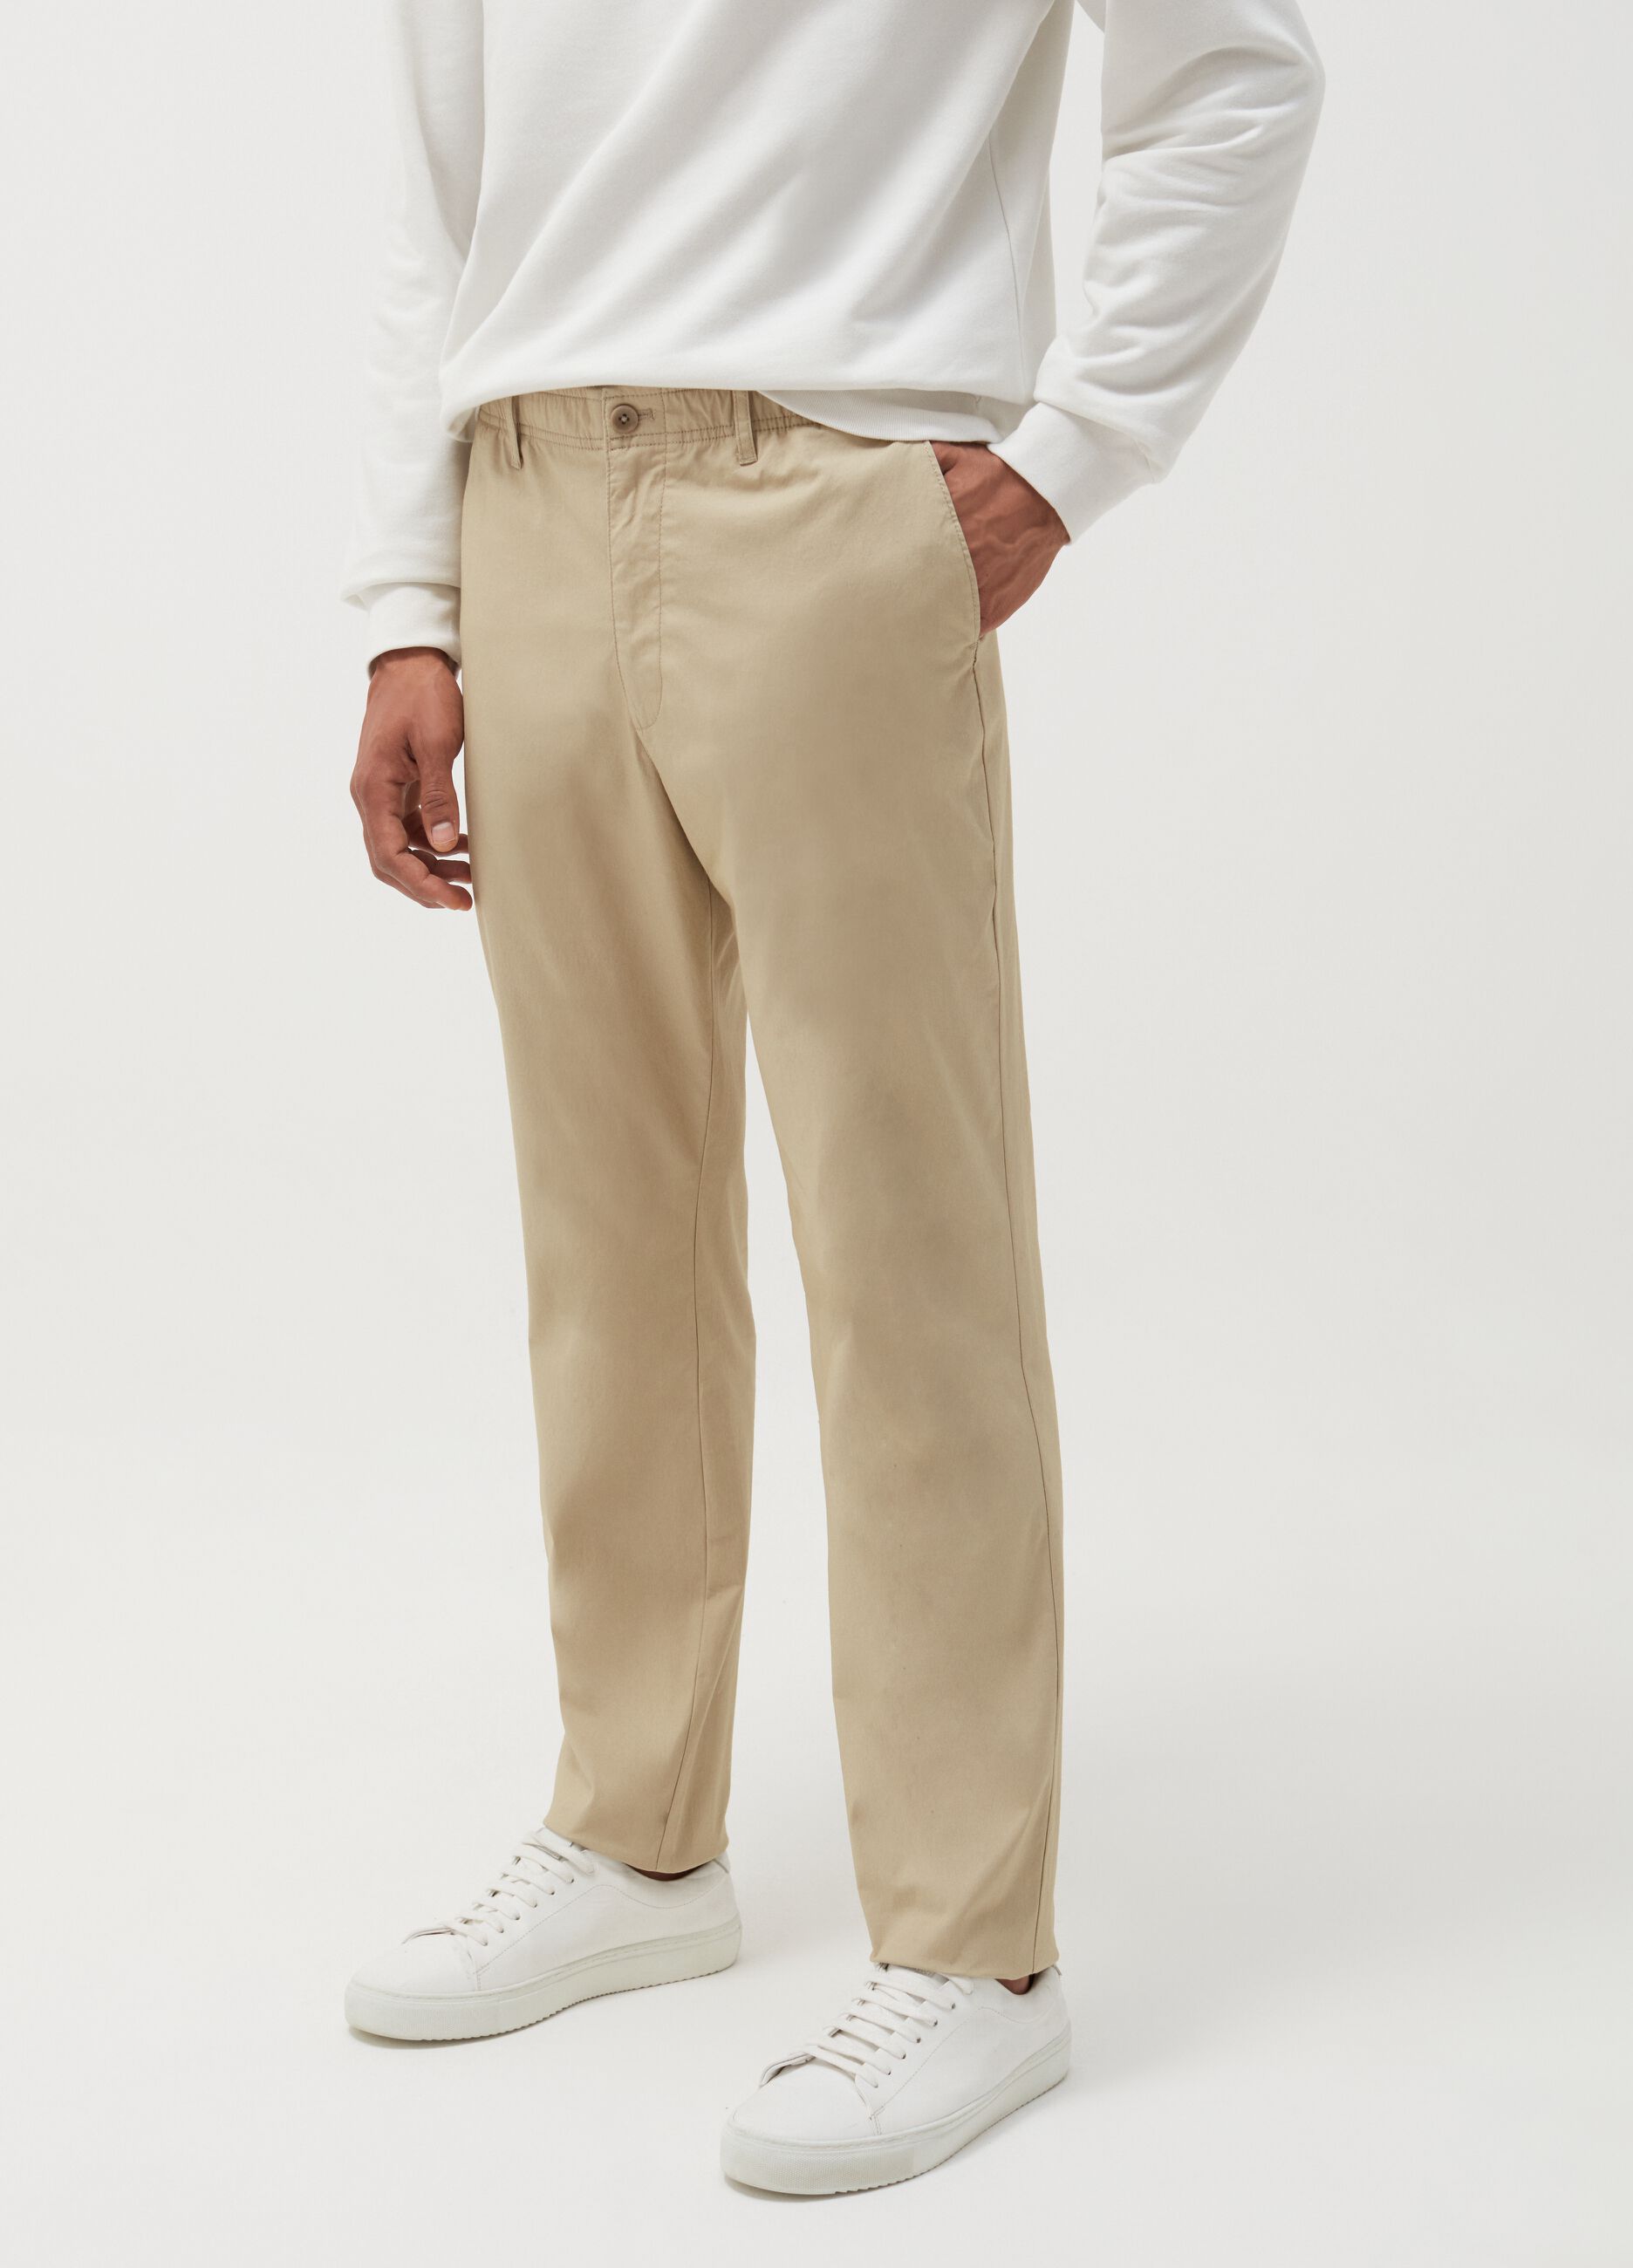 Pantalone slim fit in cotone stretch